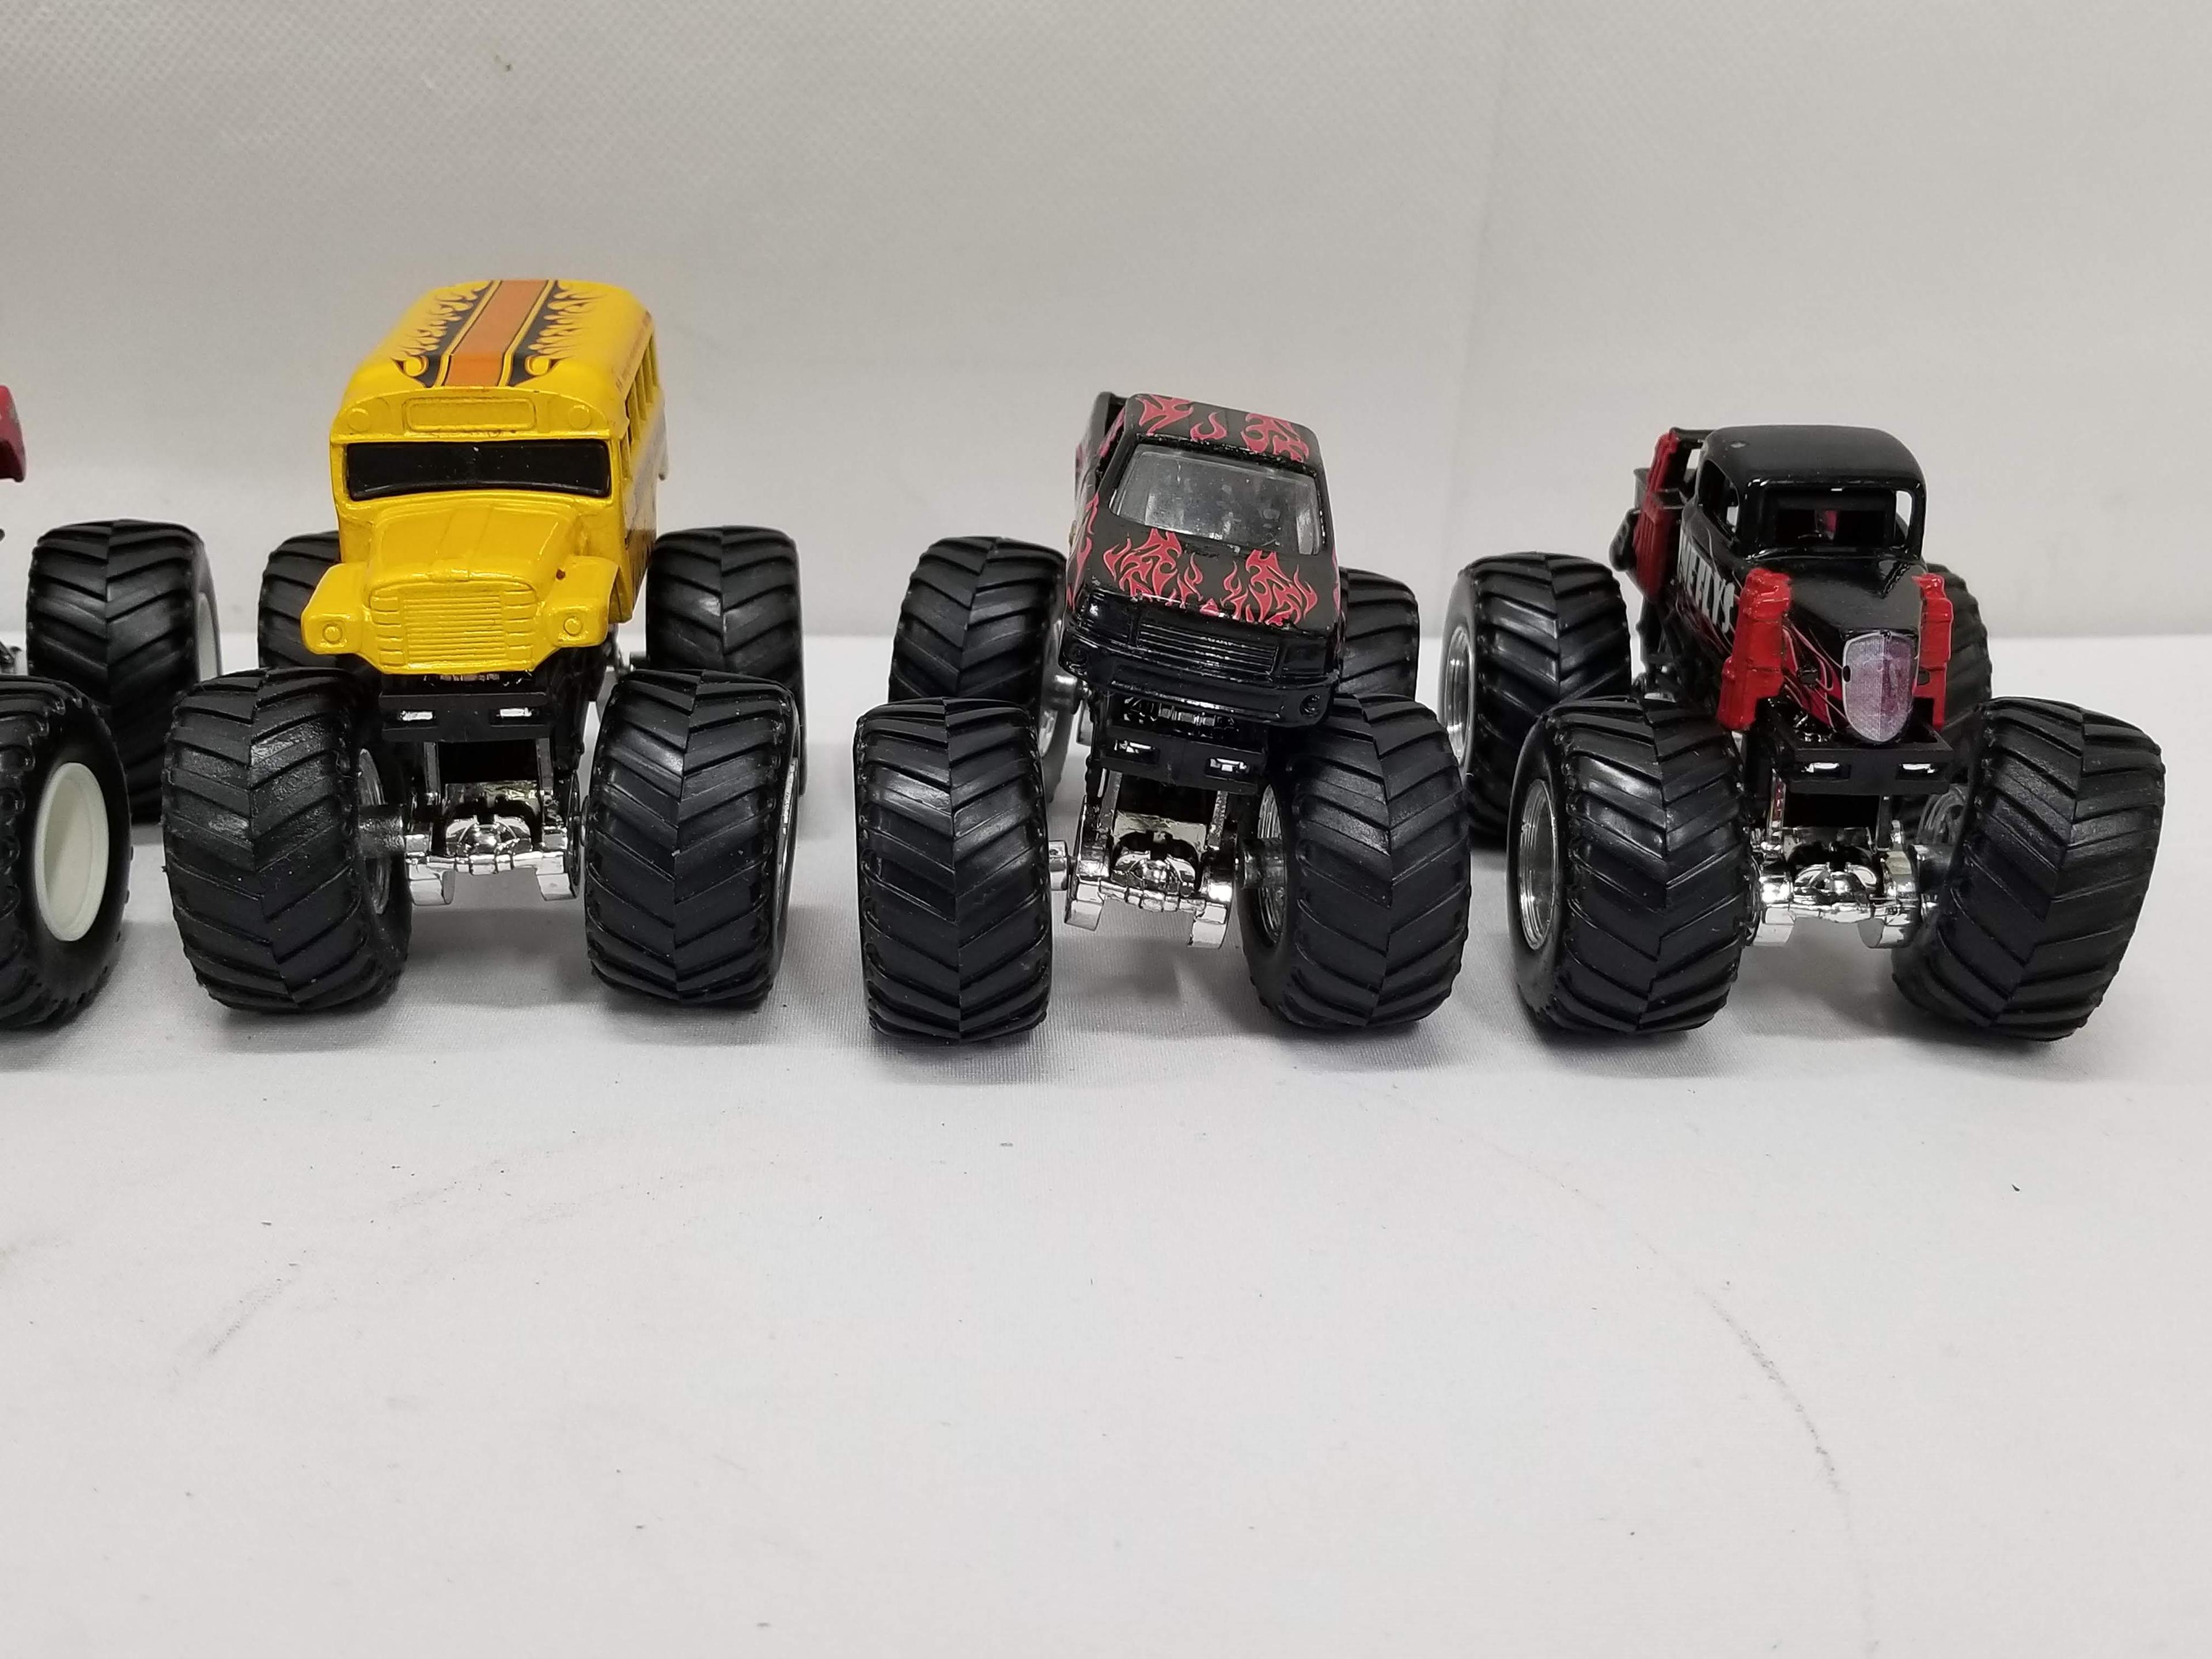 6 Smaller Monster Truck Toys: Driving Skool, Time Flys, etc.